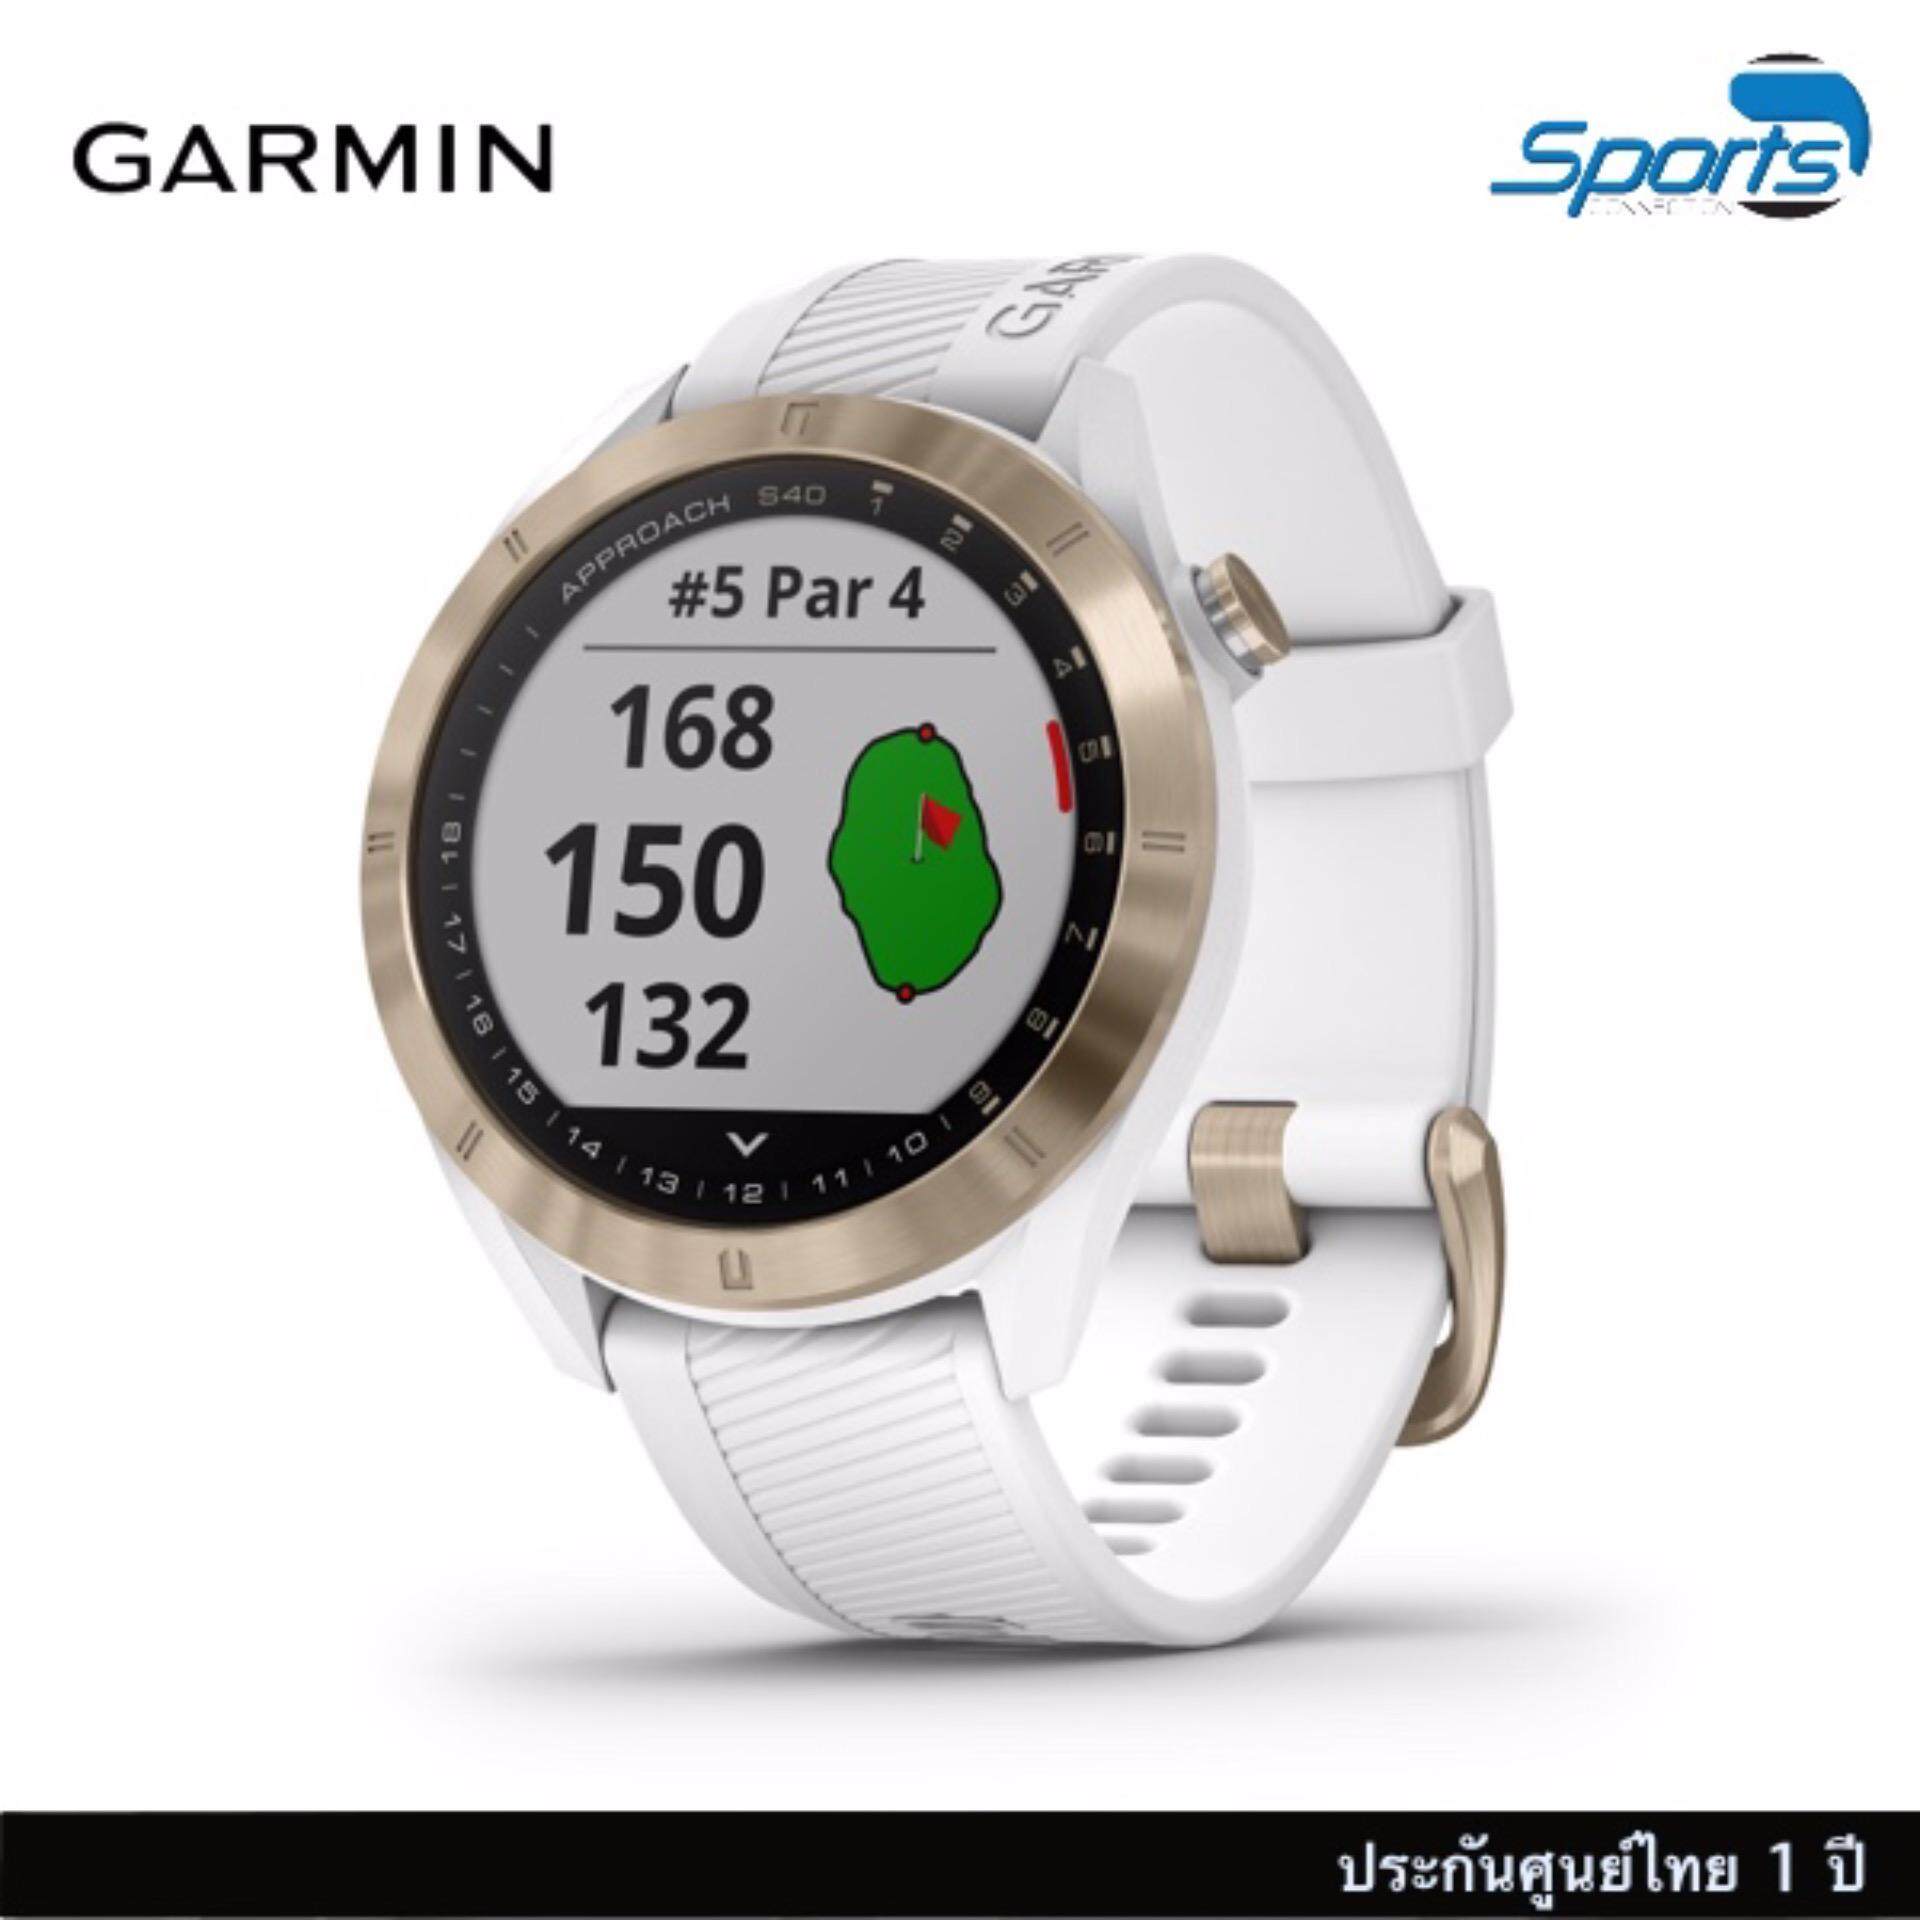 การใช้งาน  ลพบุรี Garmin Approach S40 นาฬิกากอล์ฟดูดีมีสไตล์ น้ำหนักเบา ระบบ GPS